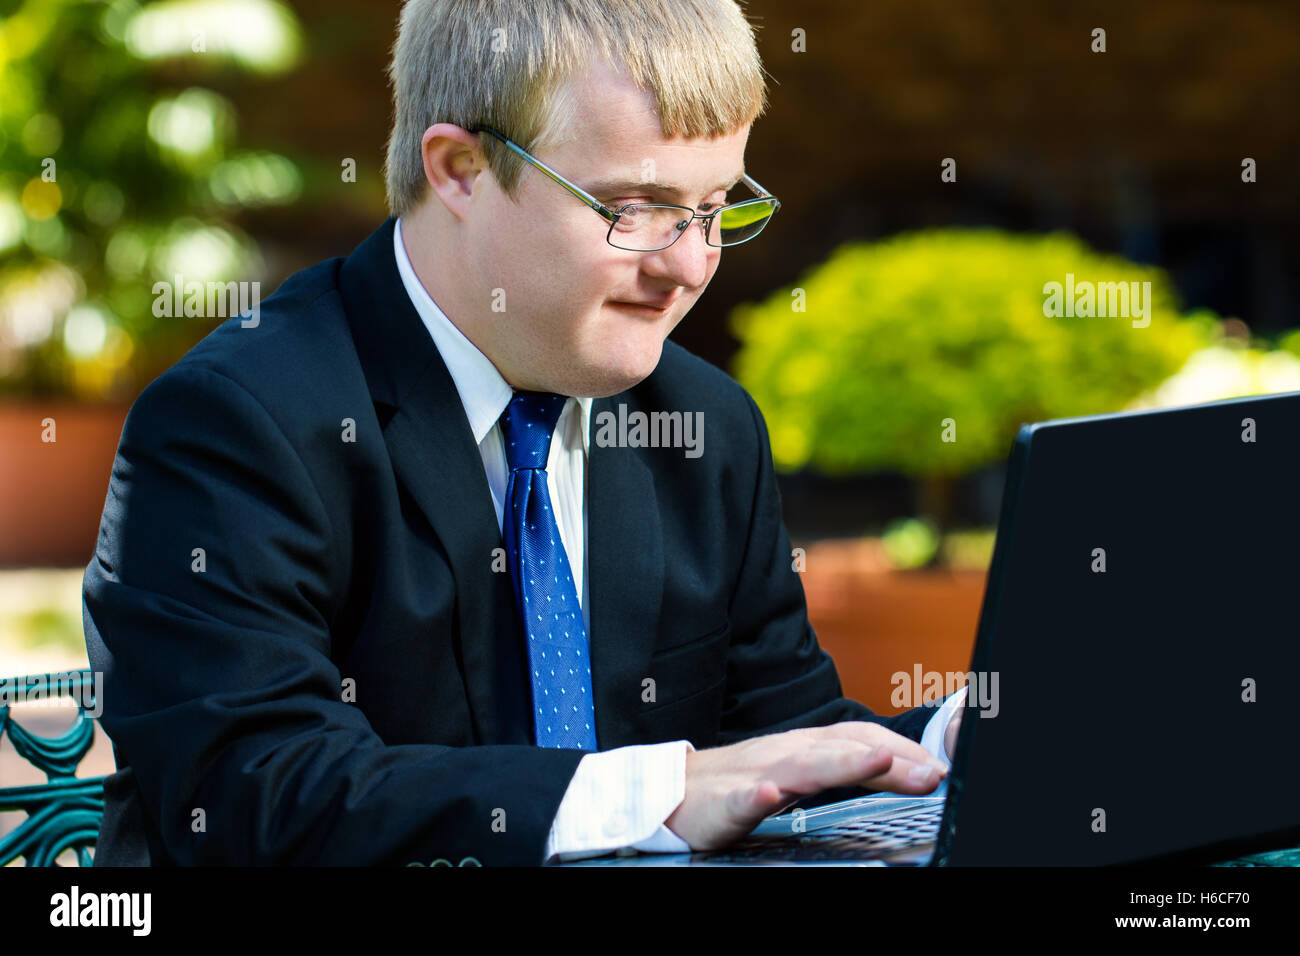 Porträt der Geschäftsmann mit Down-Syndrom arbeiten hautnah. Junger Mann im Anzug auf Laptop im Garten arbeiten. Stockfoto